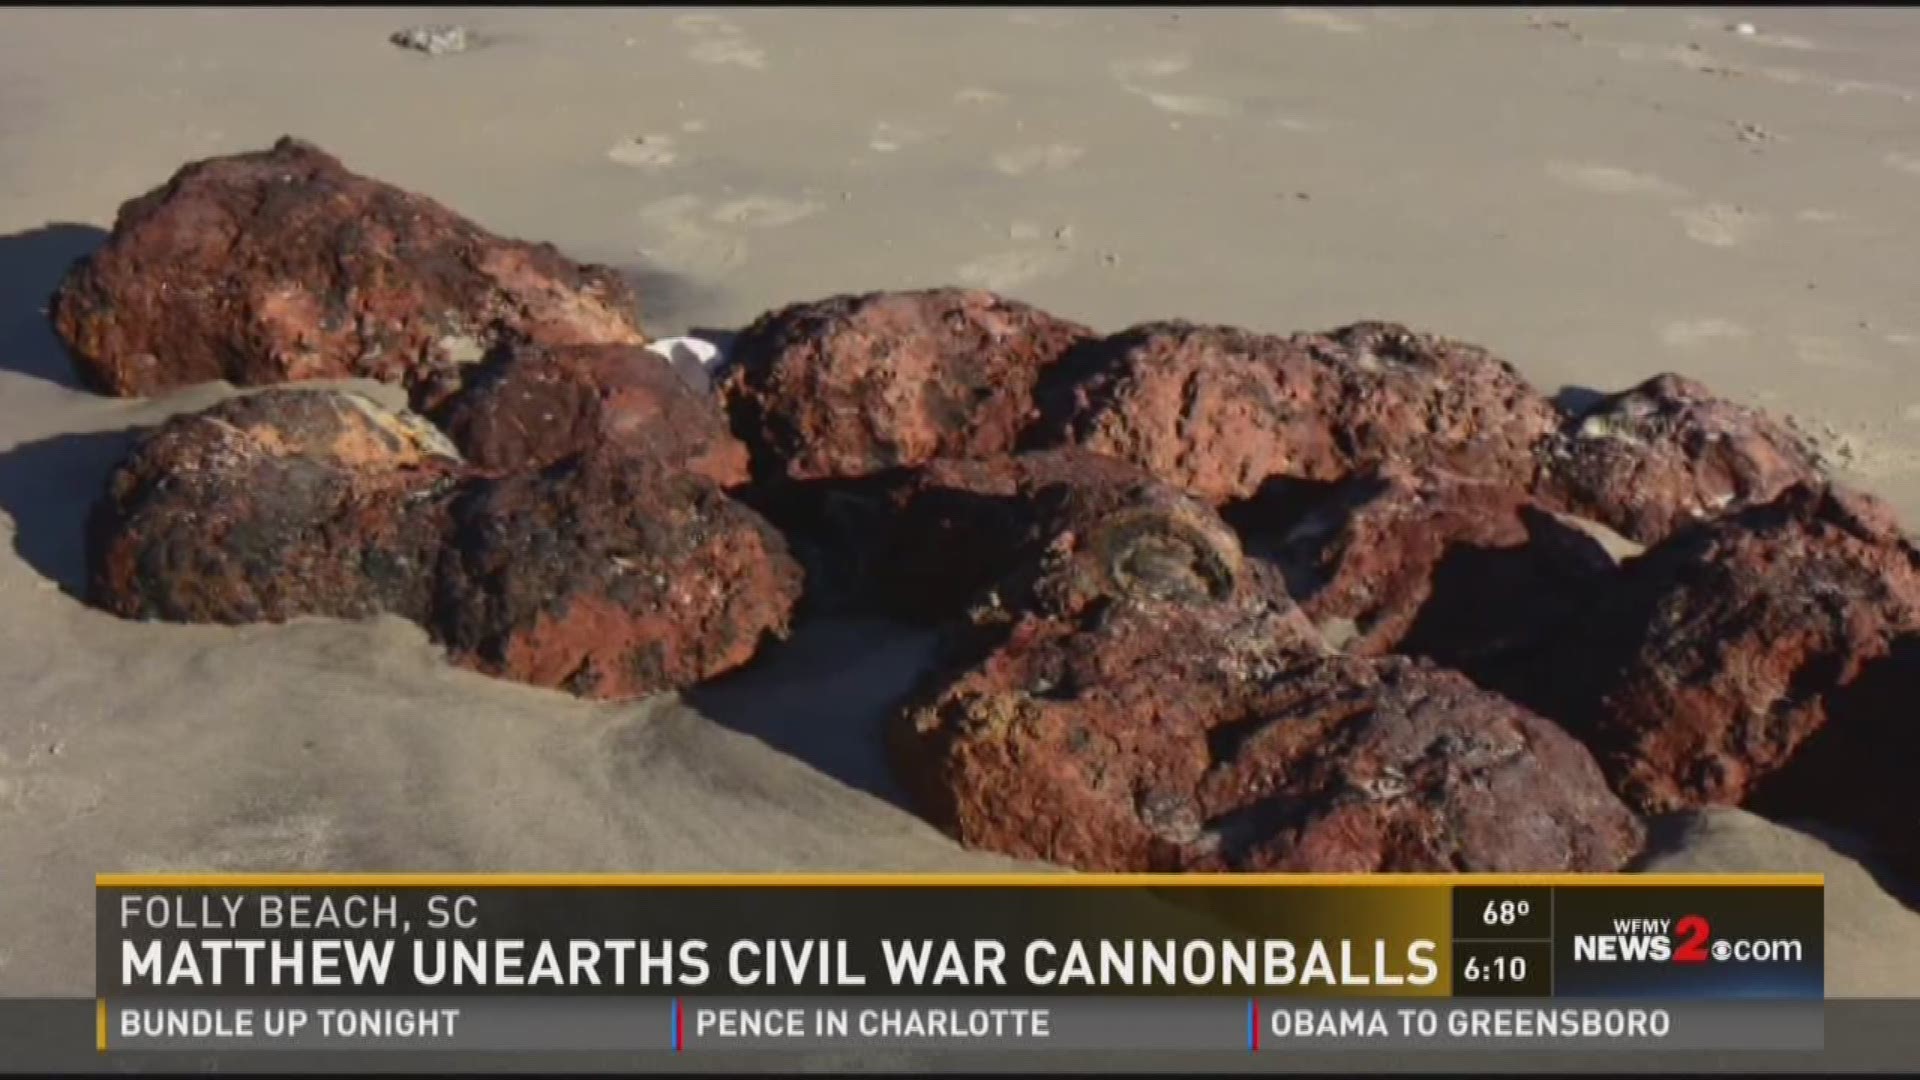 Hurricane Matthew Unearths Civil War Cannonballs On Folly Beach